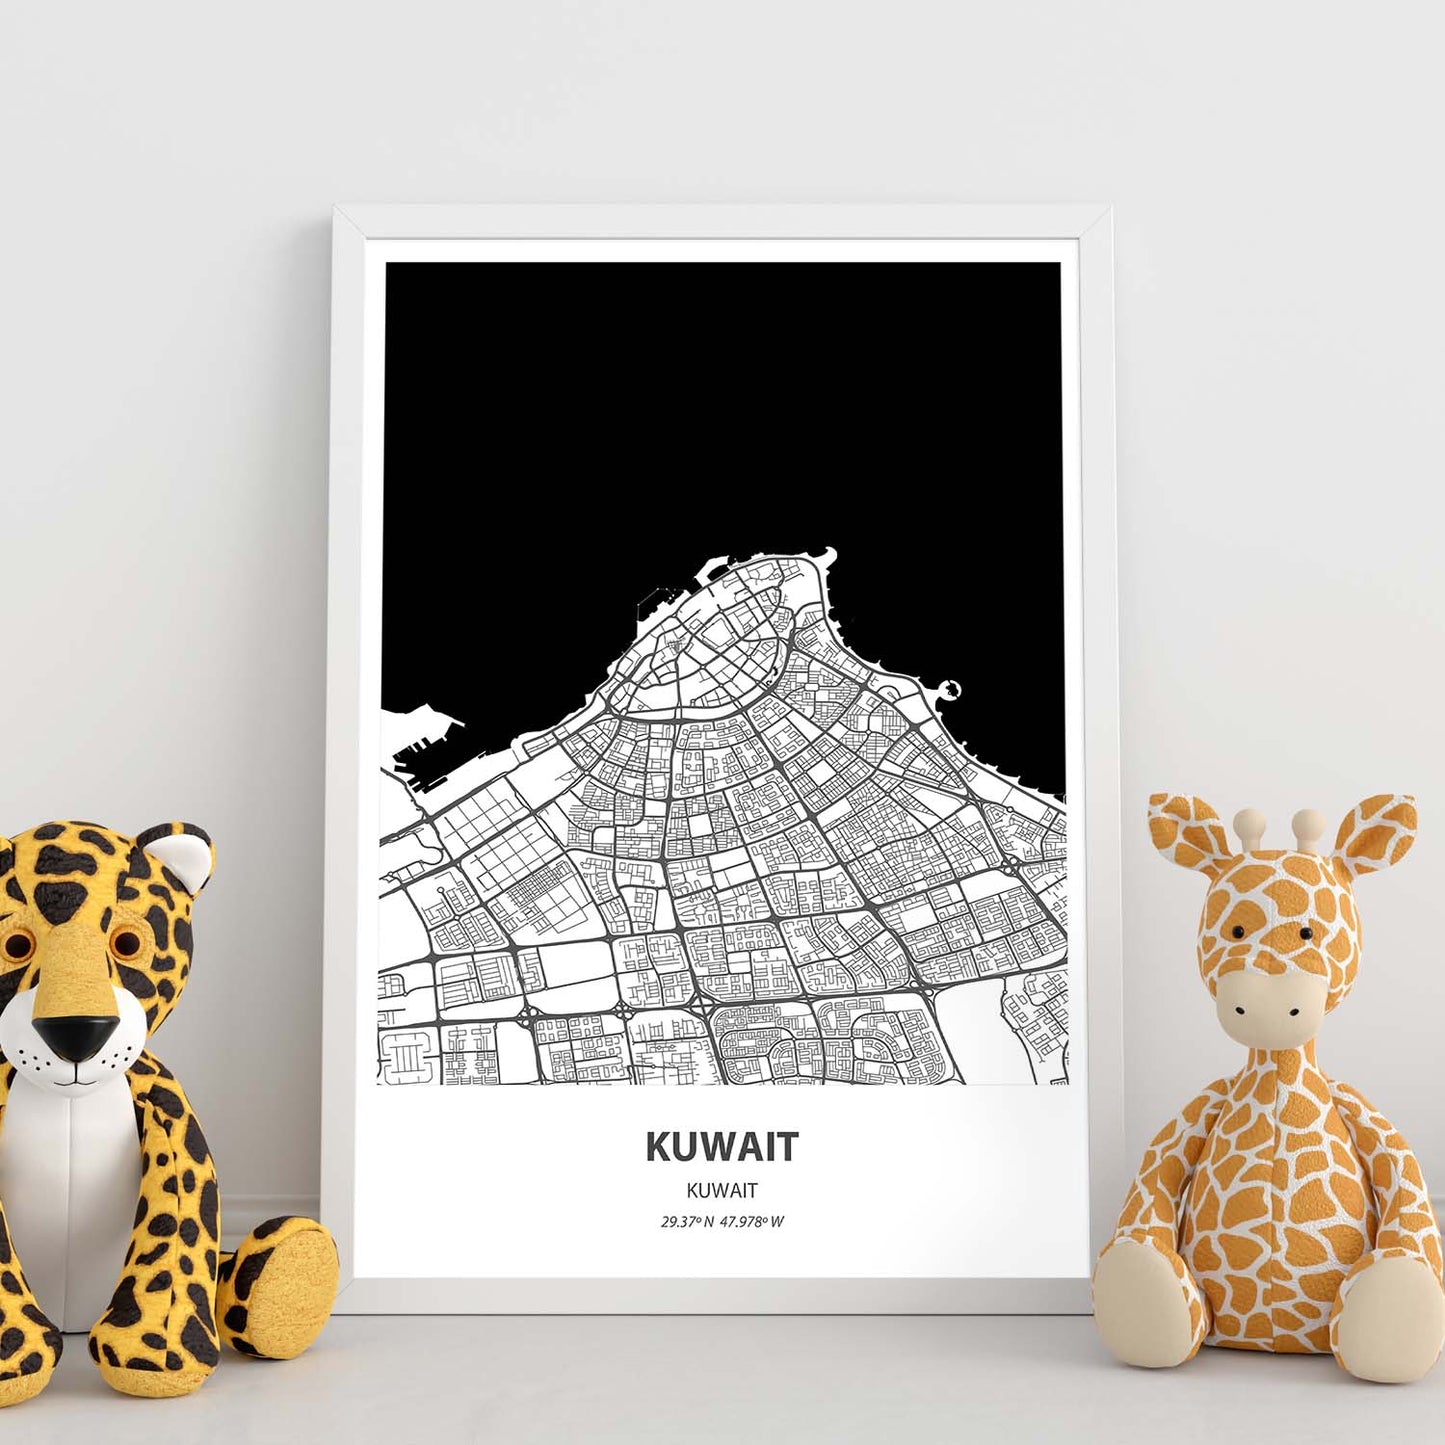 Poster con mapa de Kuwait - Kuwait. Láminas de ciudades de Oriente Medio con mares y ríos en color negro.-Artwork-Nacnic-Nacnic Estudio SL